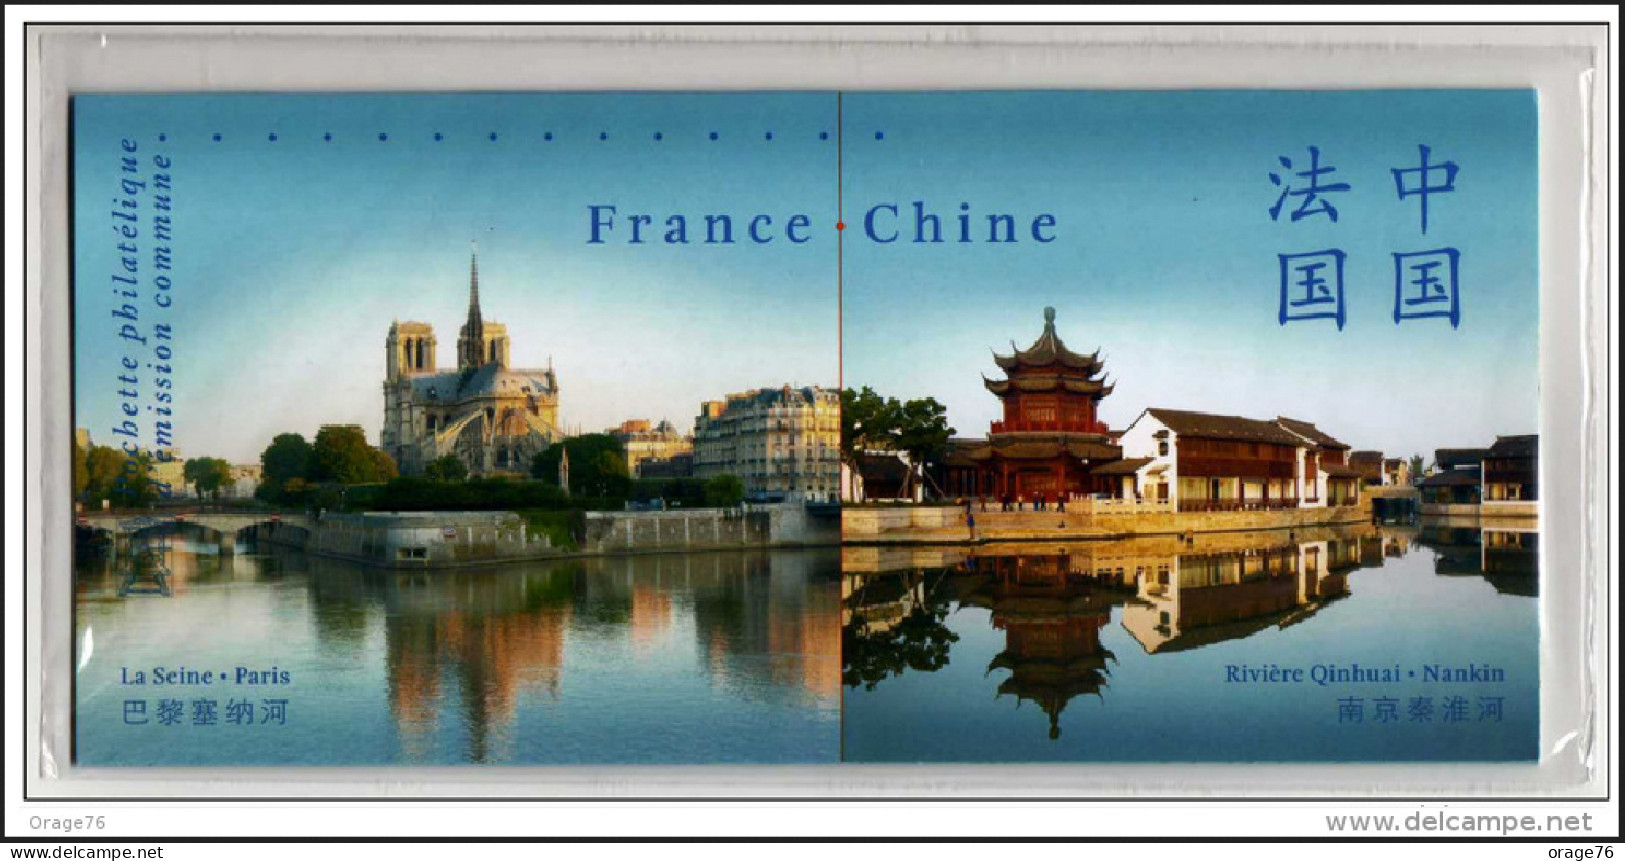 BLOC SOUVENIR EMISSION COMMUNE " FRANCE / CHINE " TTB NEUF ** SOUS BLISTER - Blocs Souvenir